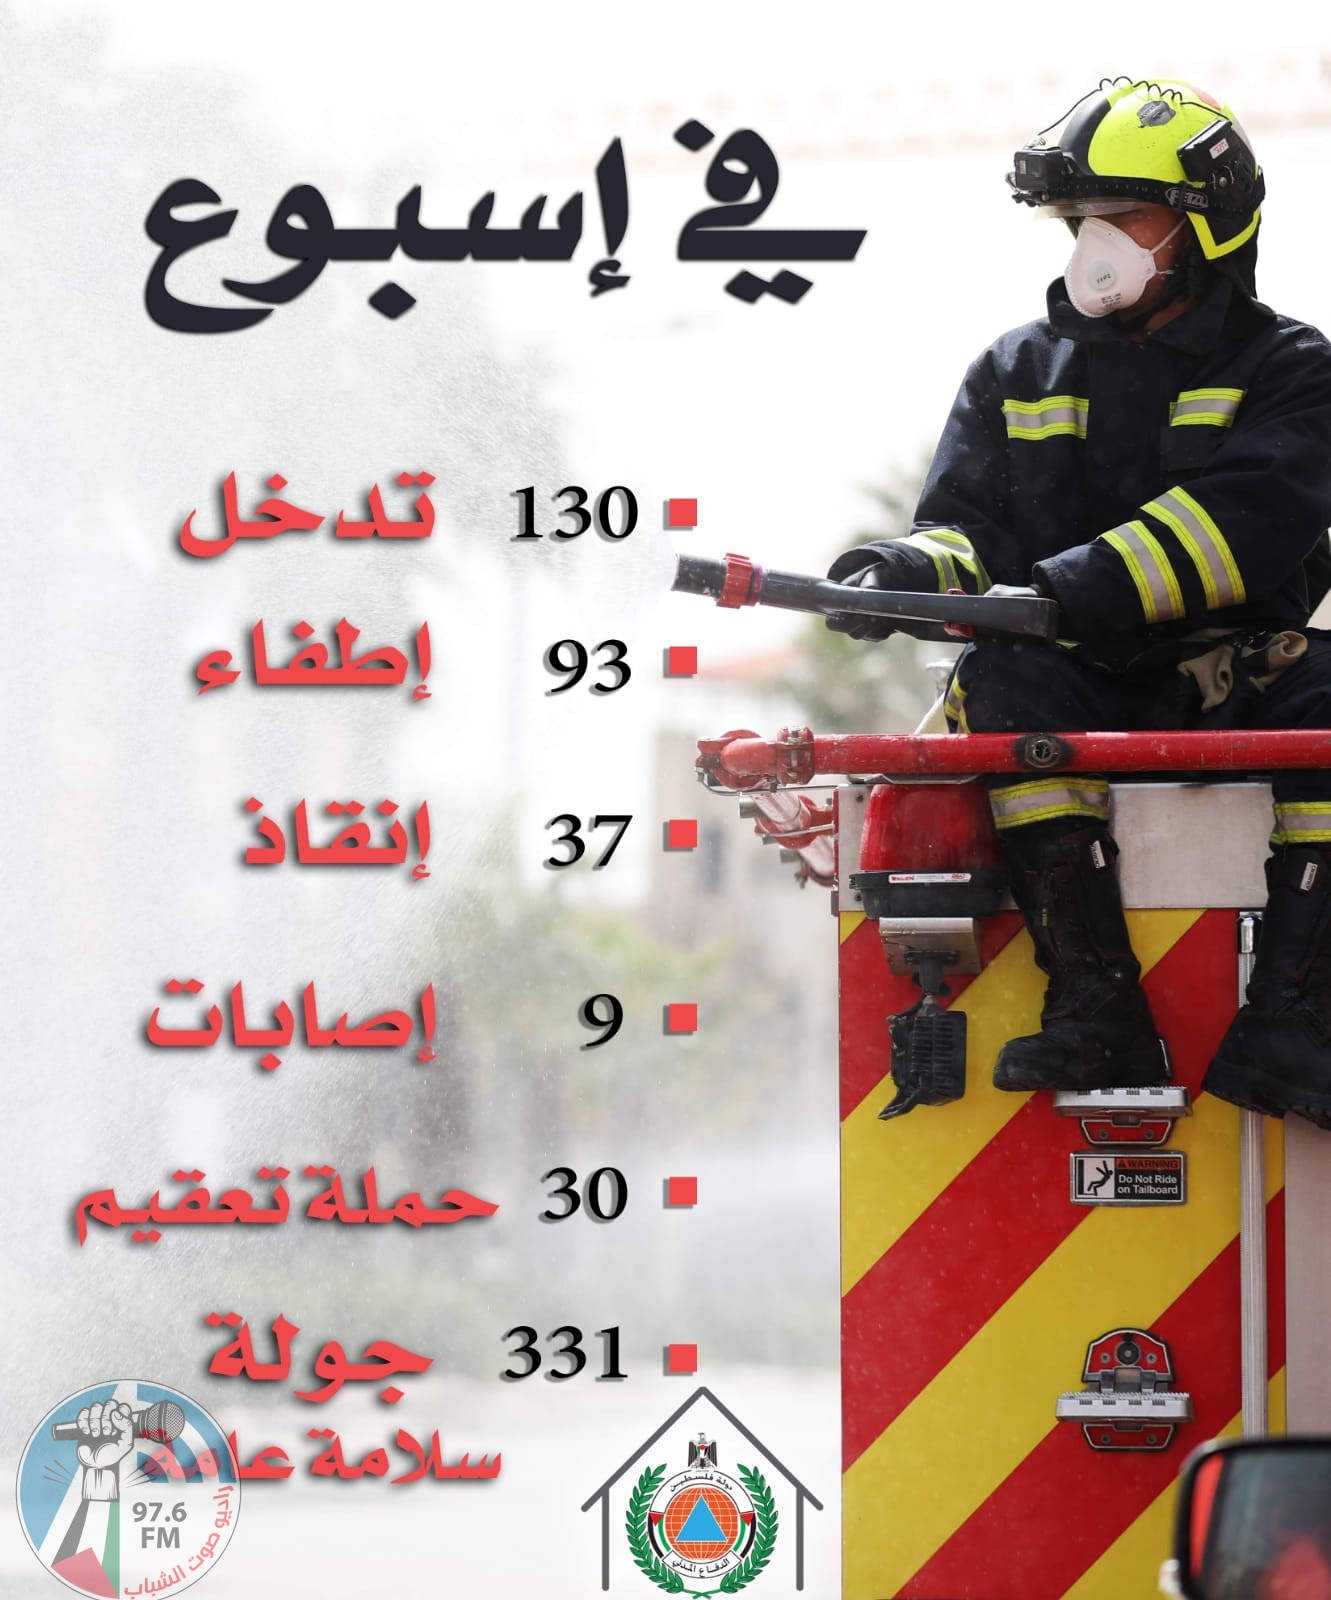 الدفاع المدني : انخفاض في عدد حوادث الاطفاء والانقاذ .